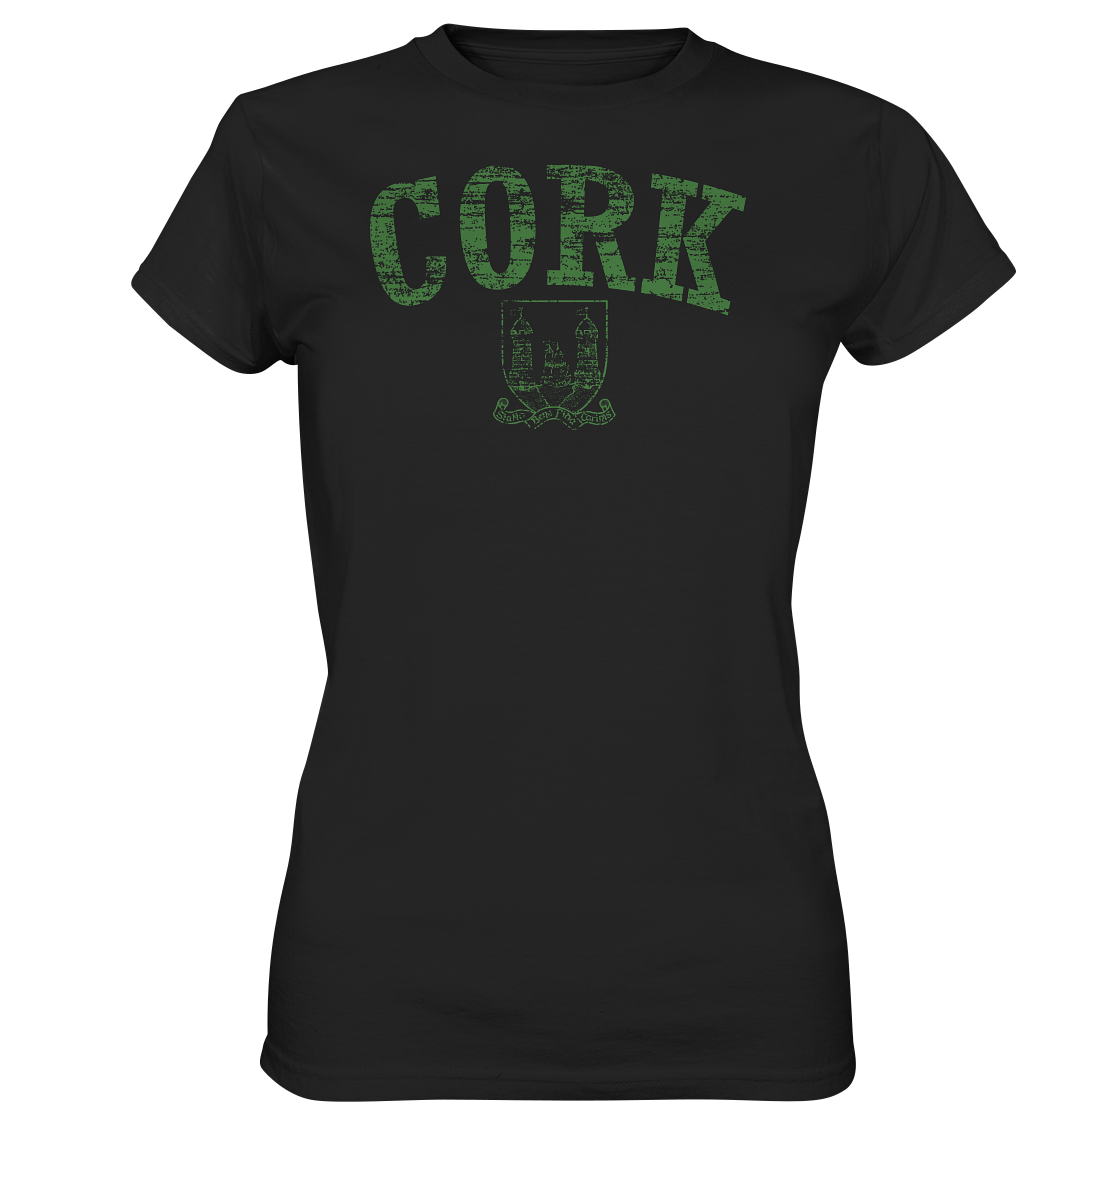 "Cork - Statio Bene Fida Carinis" - Ladies Premium Shirt